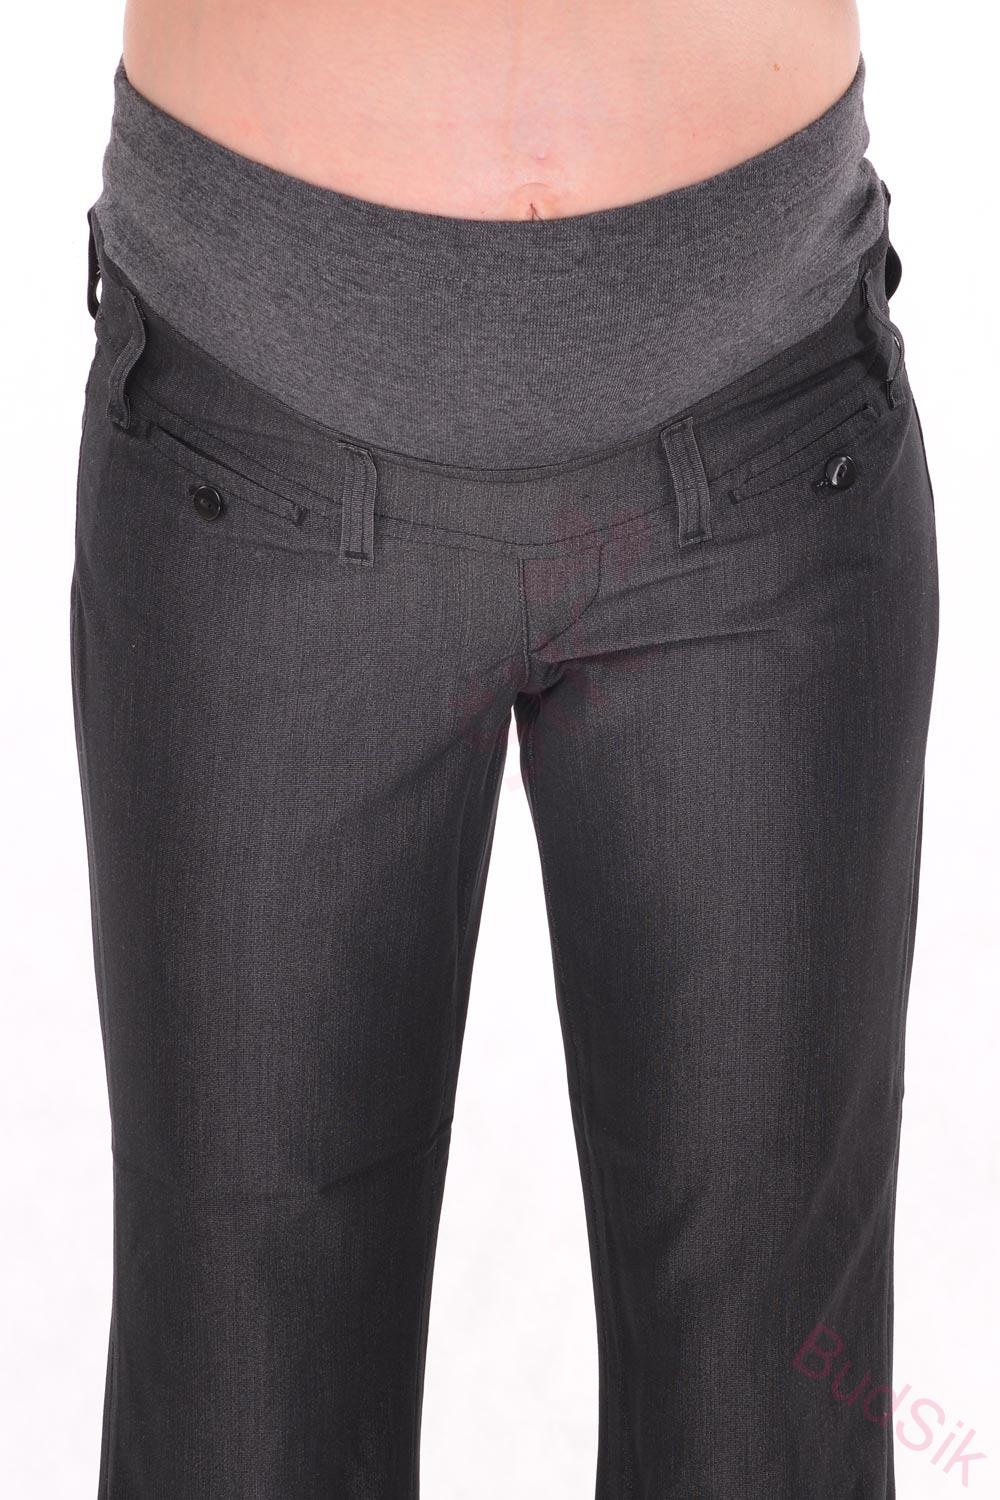 Windstar těhotenské kalhoty elegantí černé, šedé 164